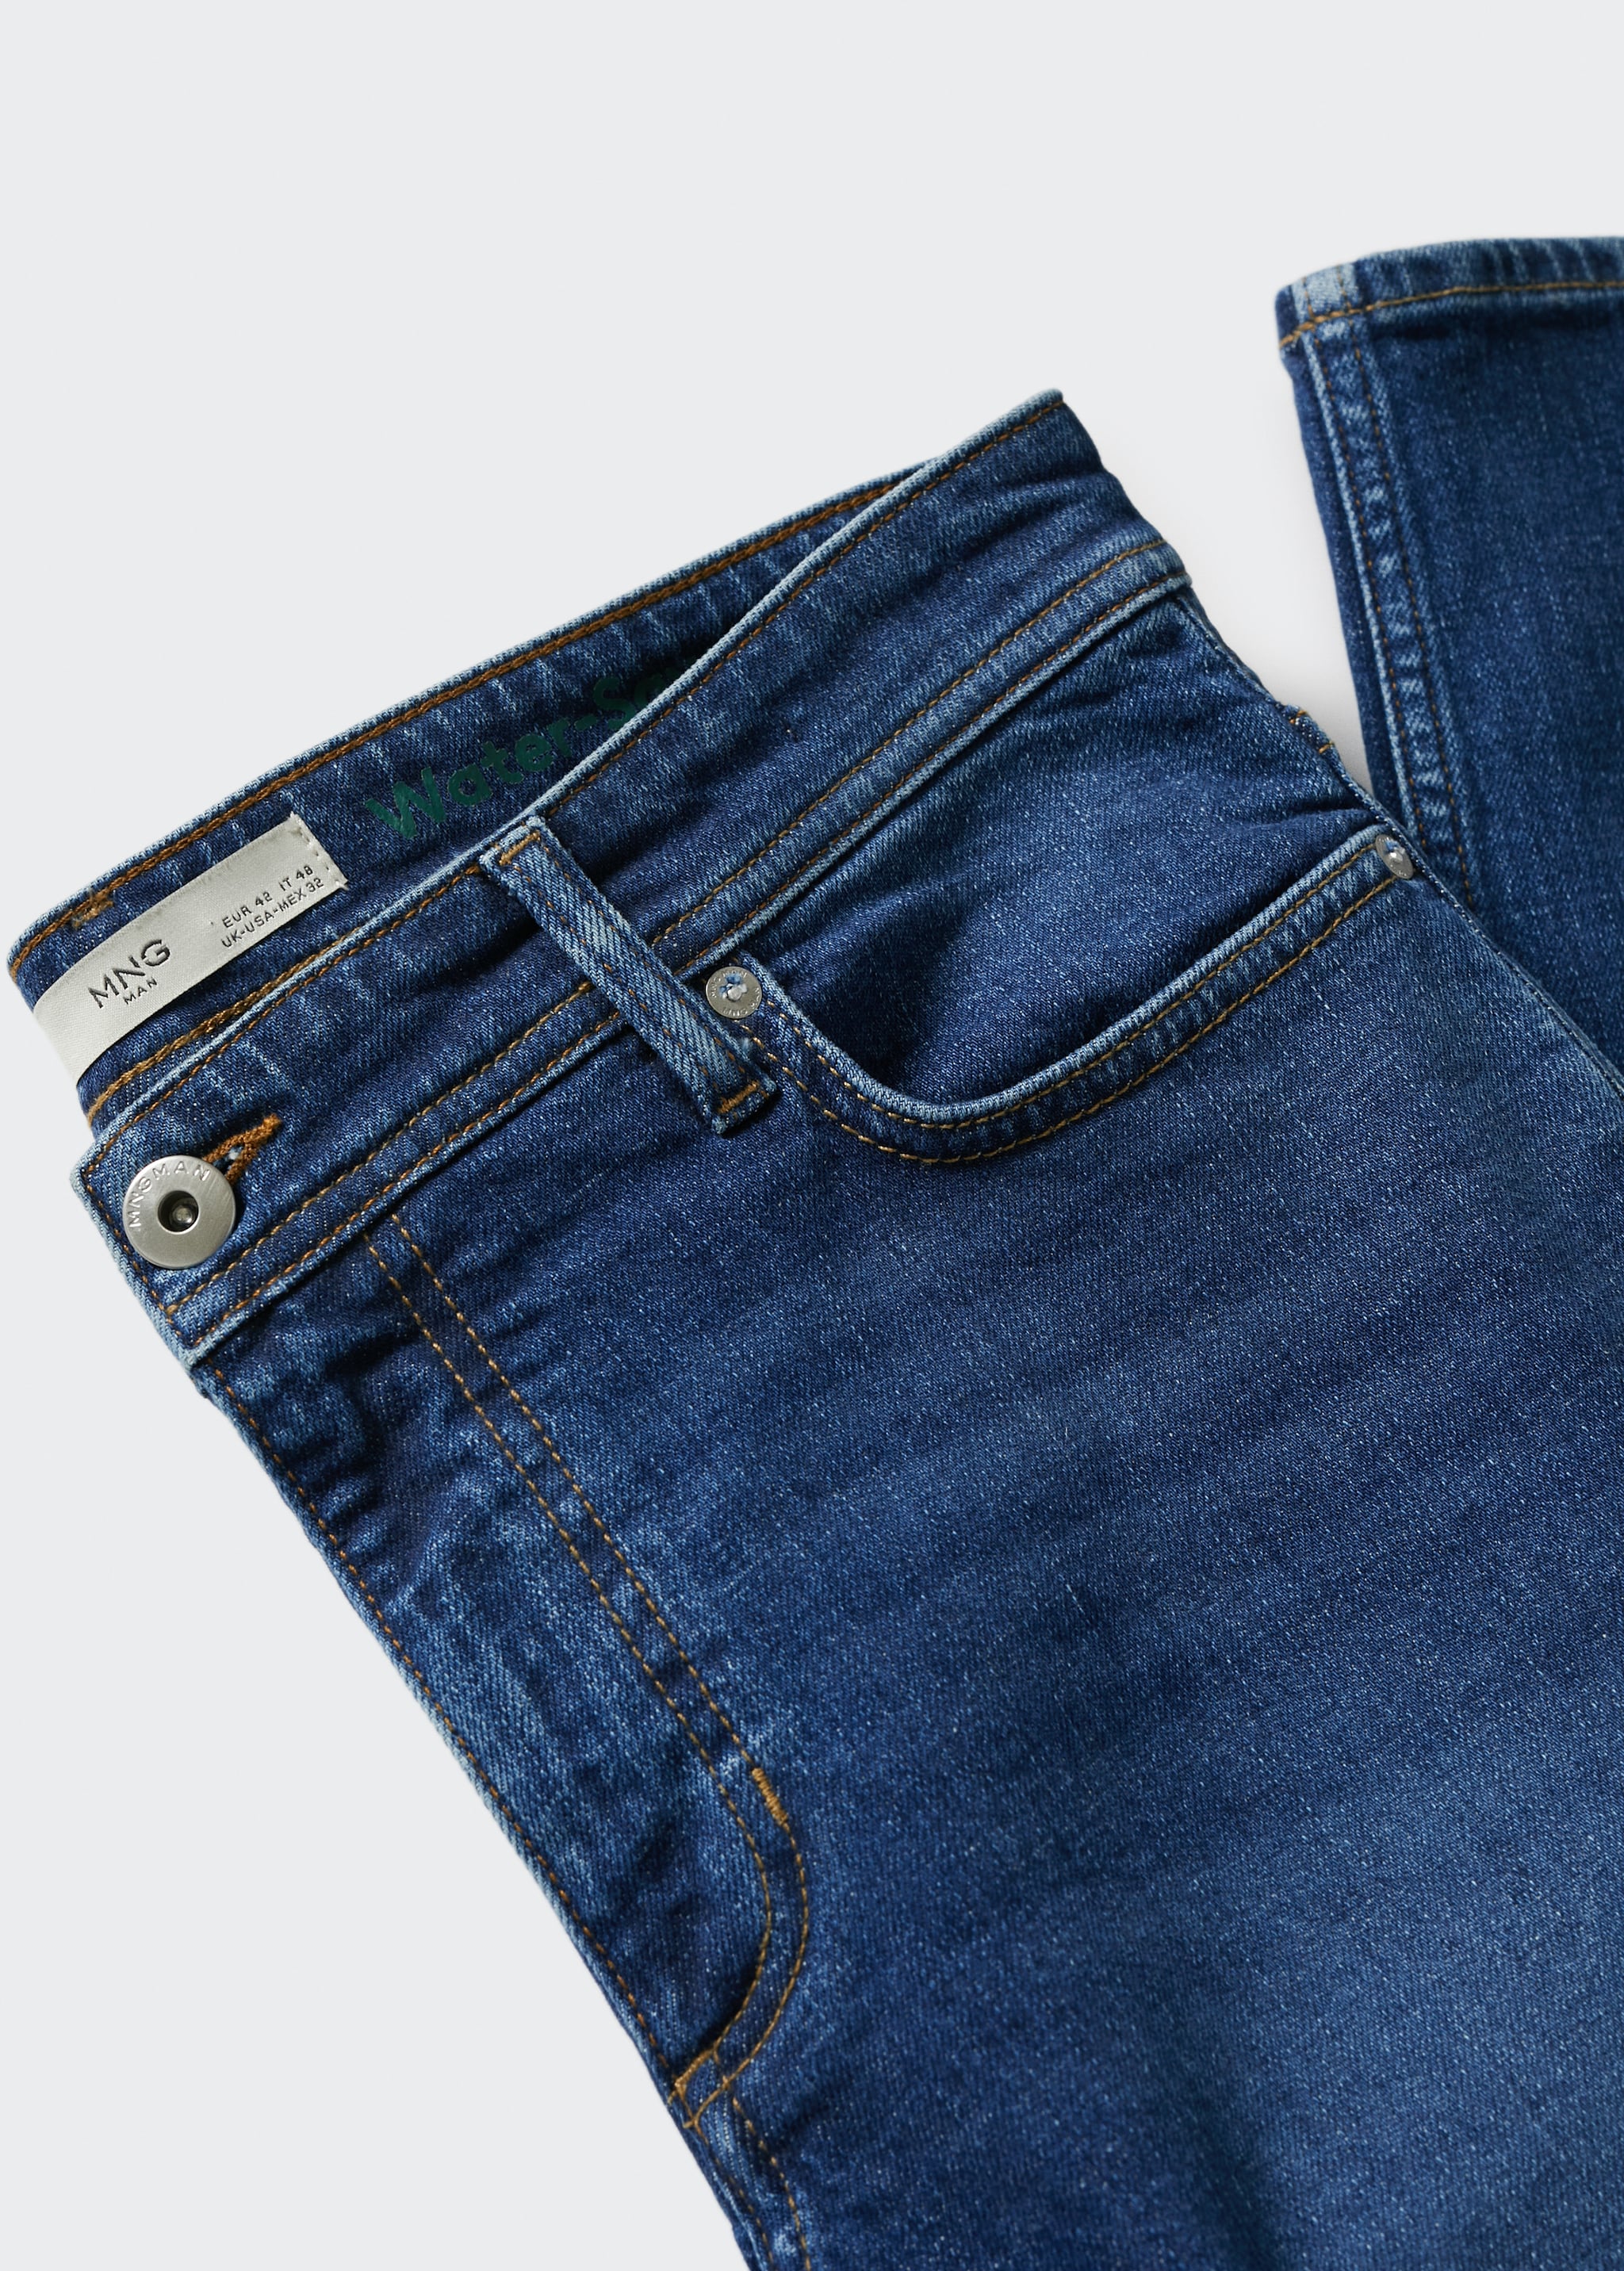 Jeans Jan slim fit  - Detalle del artículo 8